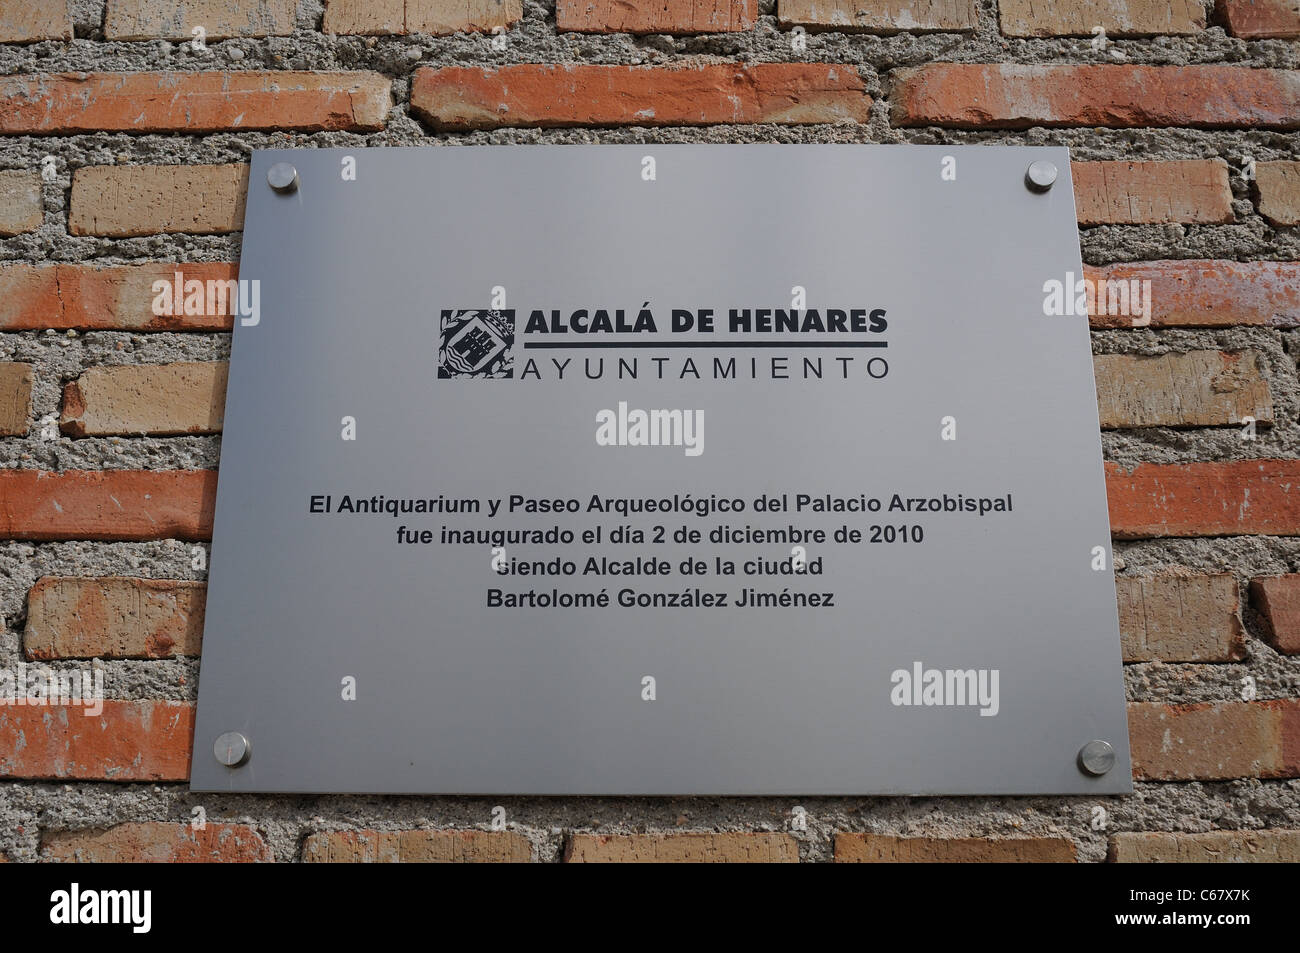 Plaque-Öffnung, das ANTIQUARIUM - Wall von ALCALA DE HENARES angehören (13 th). Autonome Gemeinschaft Madrid. Spanien Stockfoto